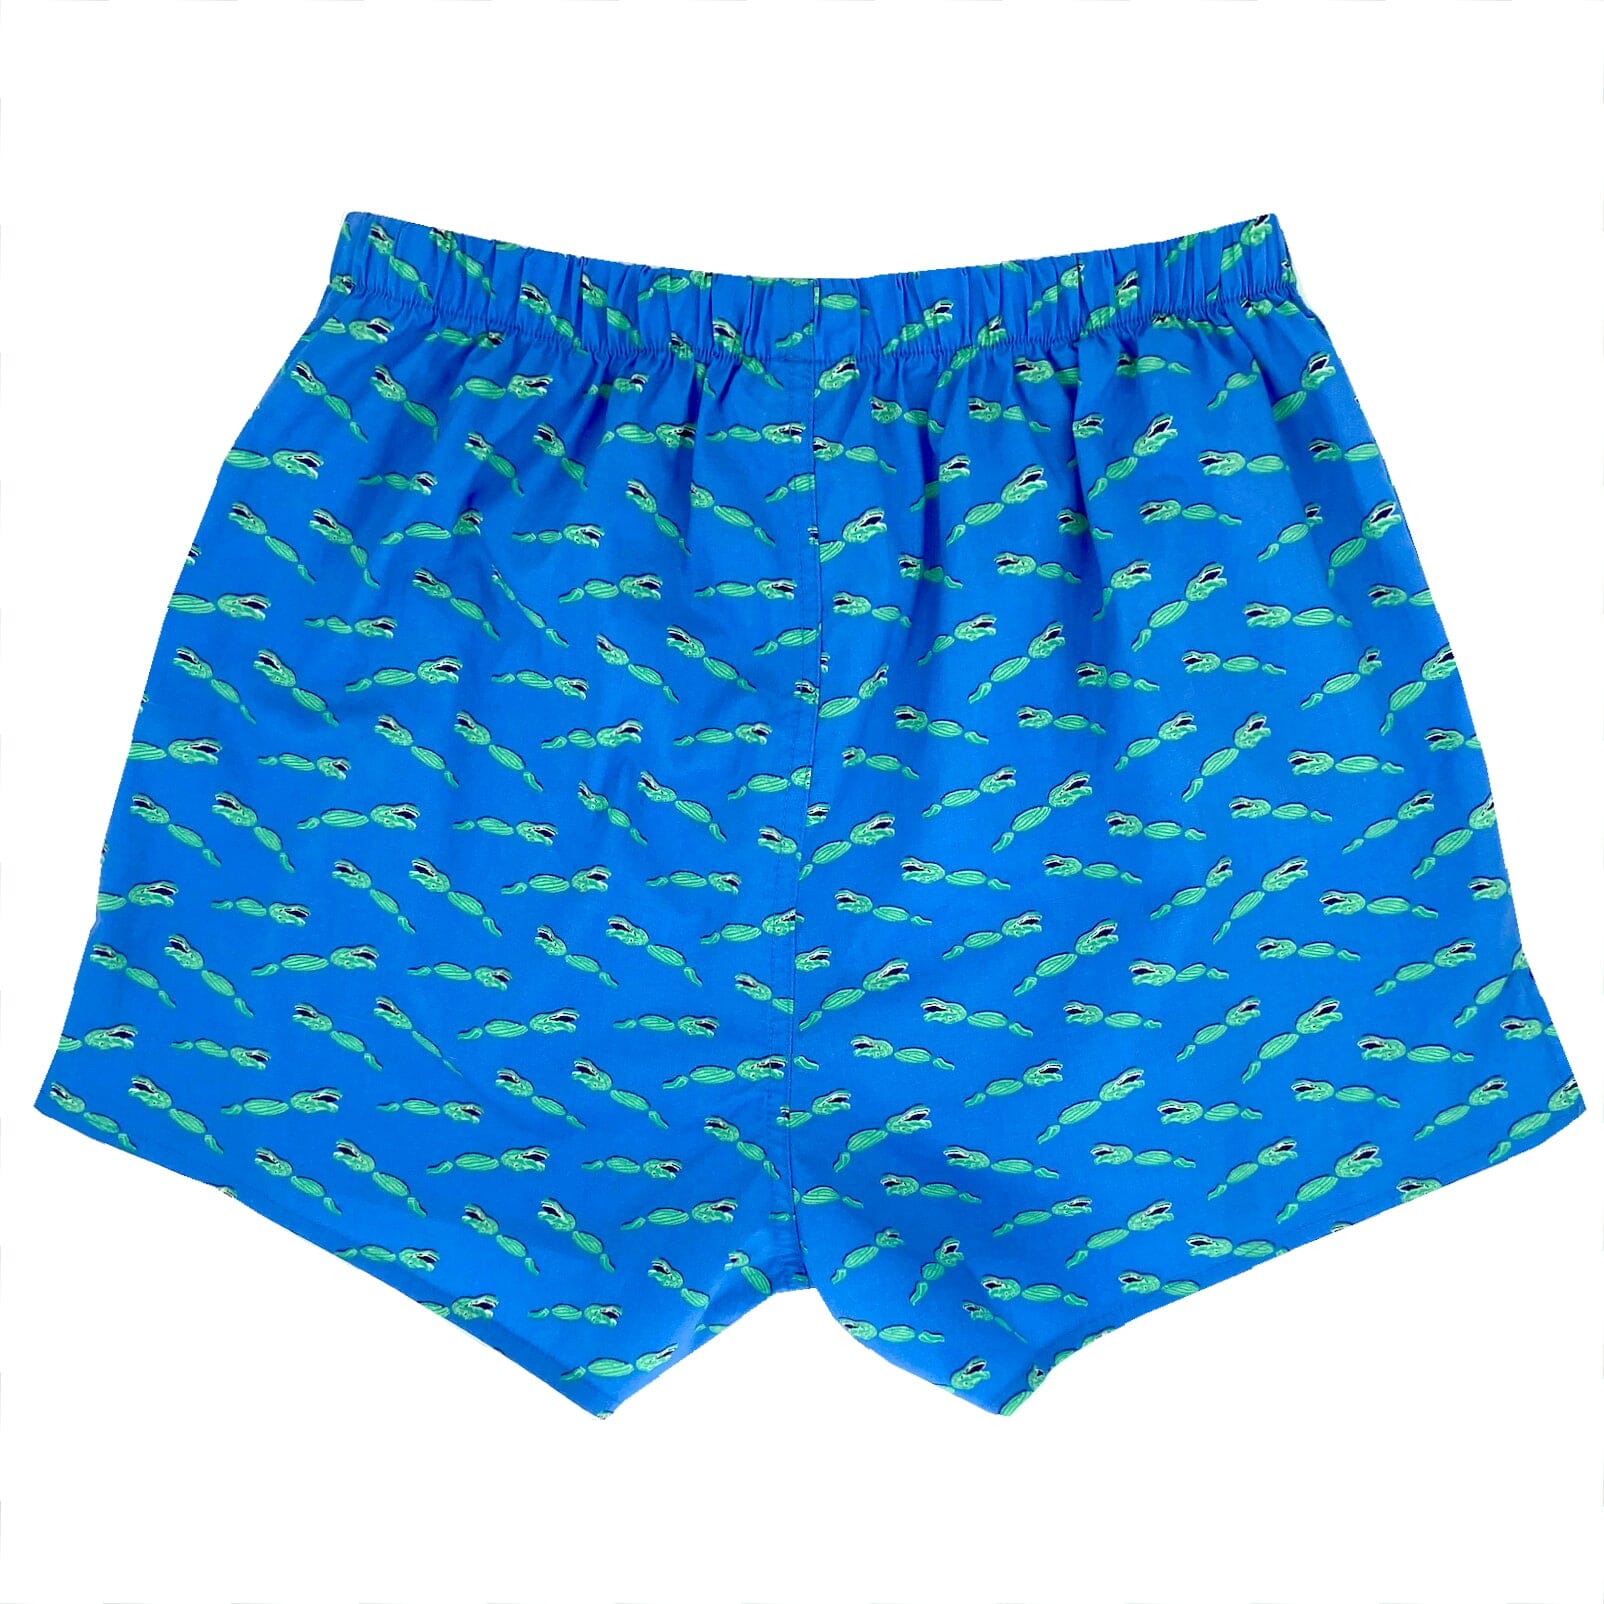 https://www.rockatoll.com/cdn/shop/products/crocodile-patterned-boxer-shorts-underwear-sleepwear.jpg?v=1671283847&width=1604